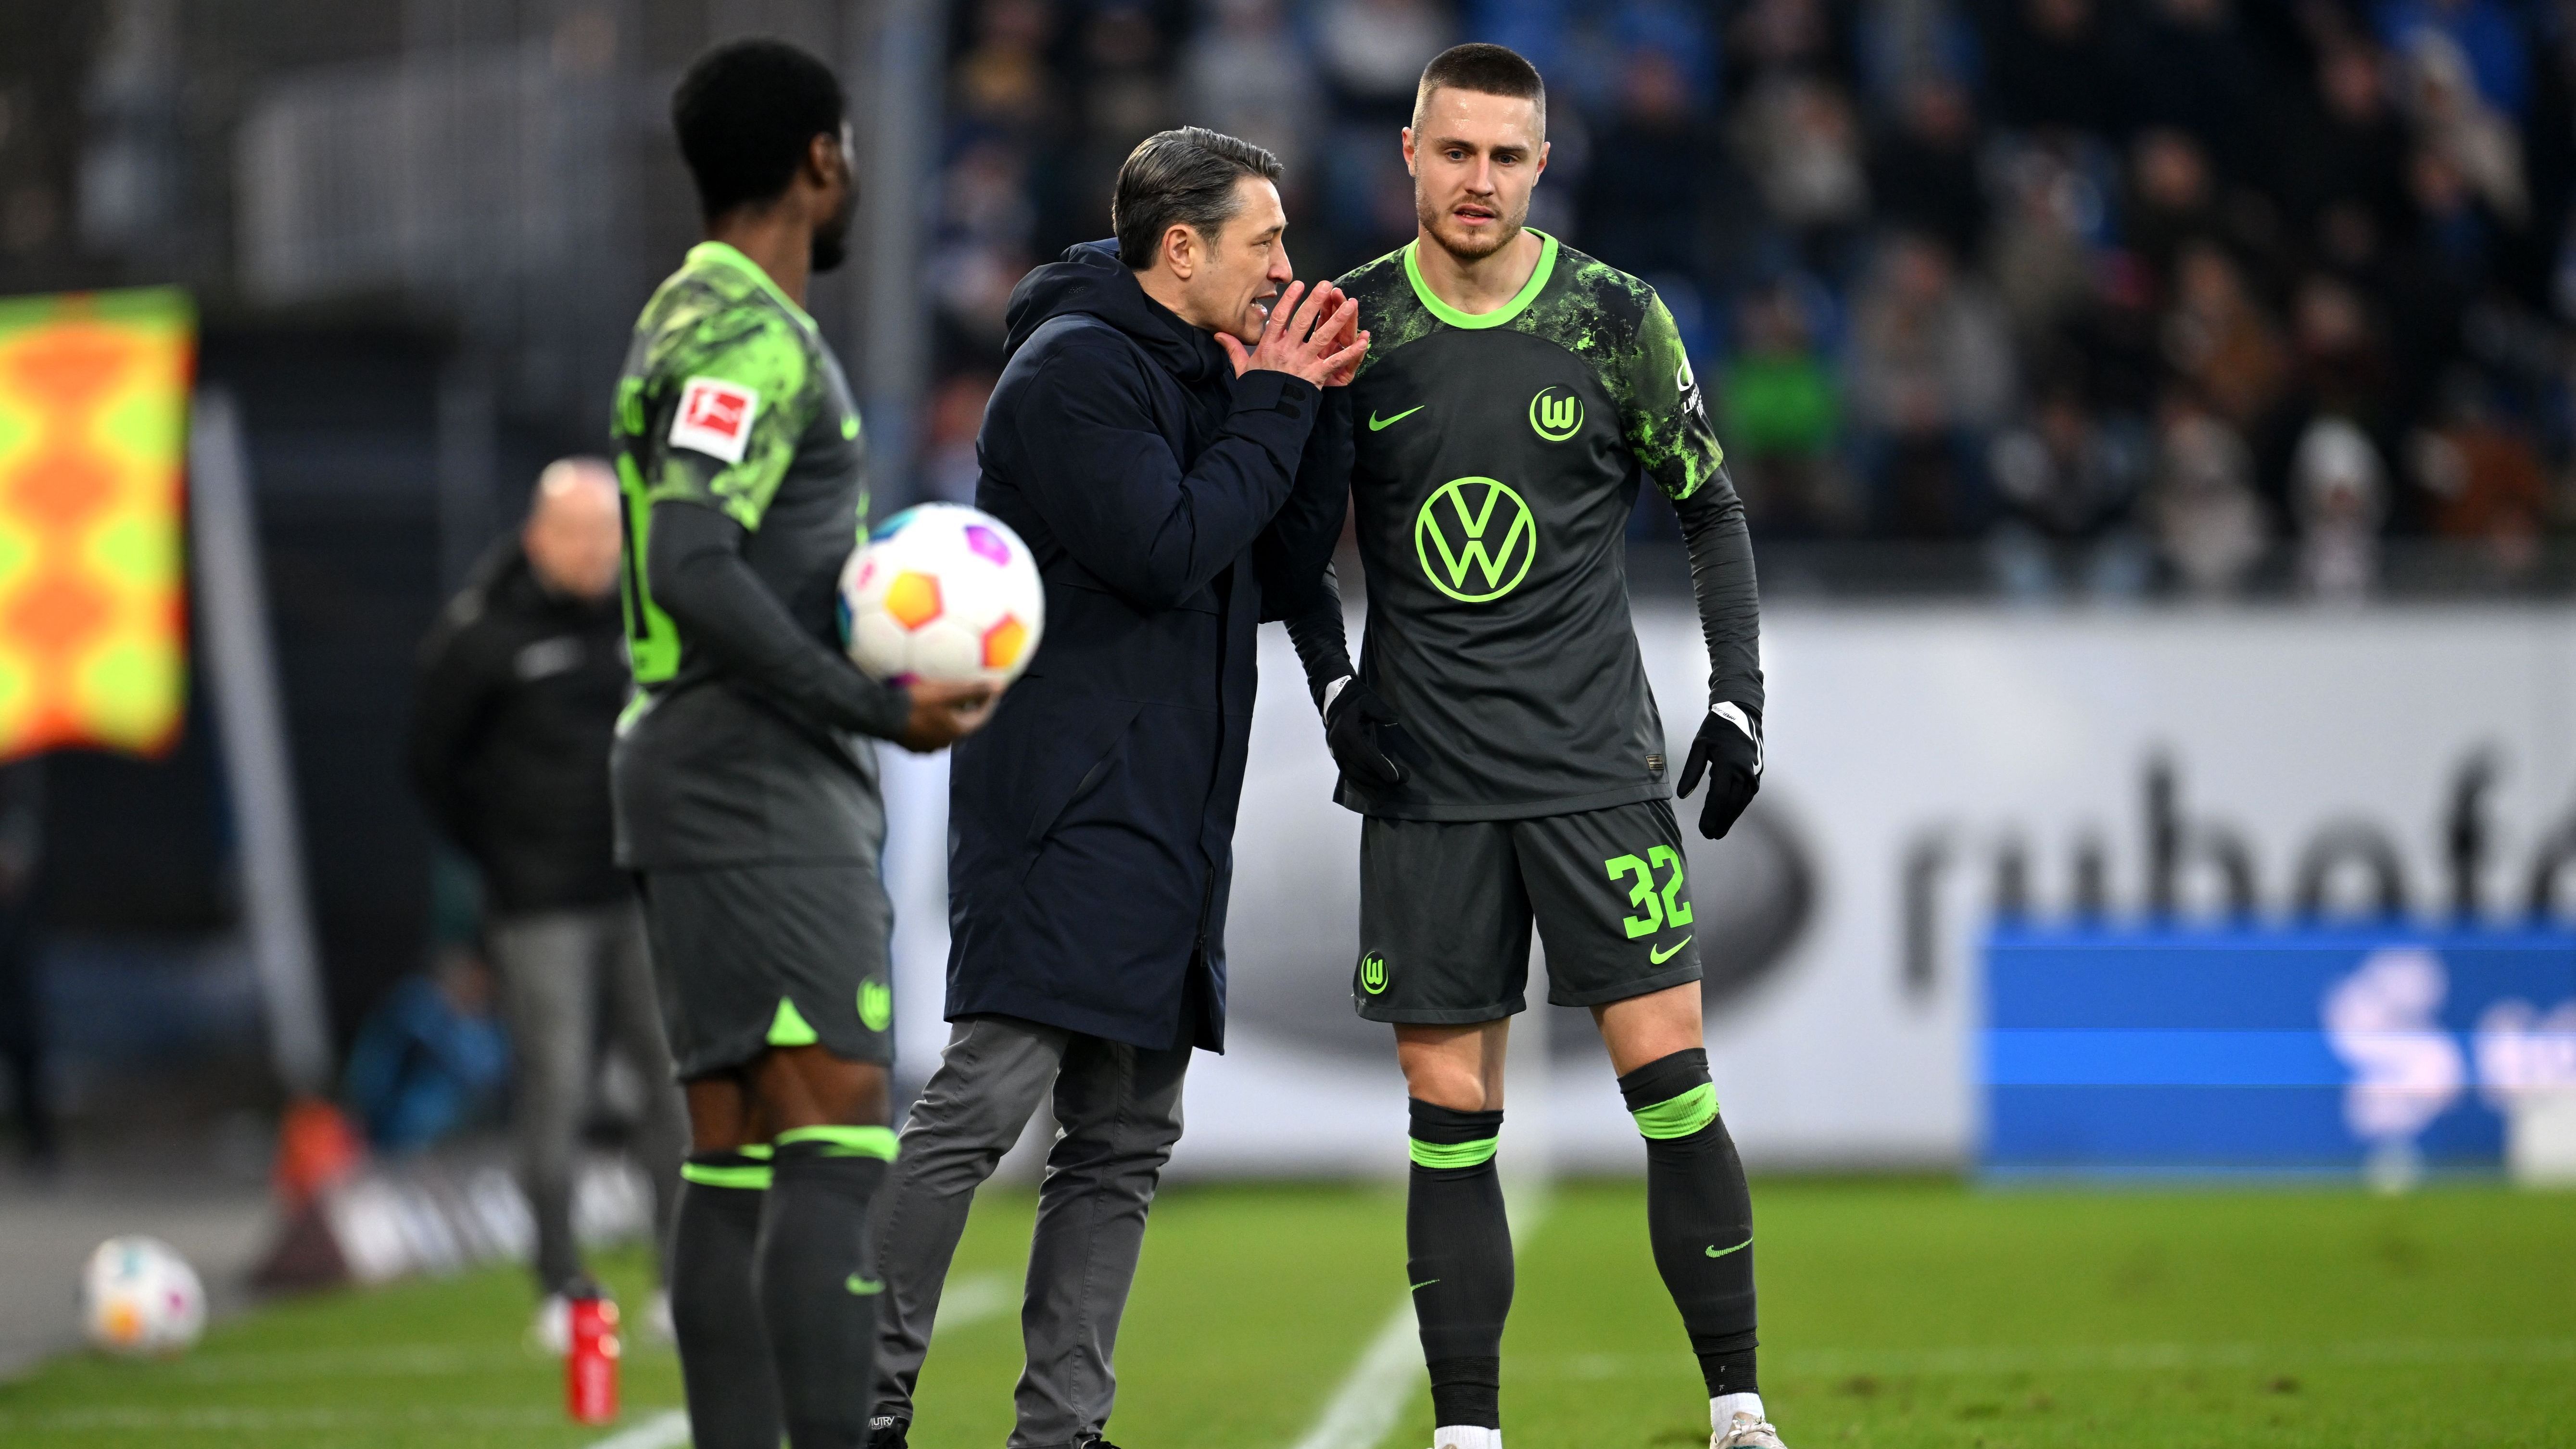 <strong>Platz 15: VfL Wolfsburg</strong><br>Die Niedersachsen hatten in der bisherigen Saison auswärts große Probleme. Mit sechs Niederlagen in fremden Stadien ist kein Team in dieser Statistik schlechter. Gleich zum Jahresauftakt bietet sich für Coach Niko Kovac und sein Team die Chance, zur Trendwende – es folgen die Auswärtspartien in Mainz und Heidenheim. Im Test gegen Schalke feierte Wolfsburg einen 3:2-Sieg.